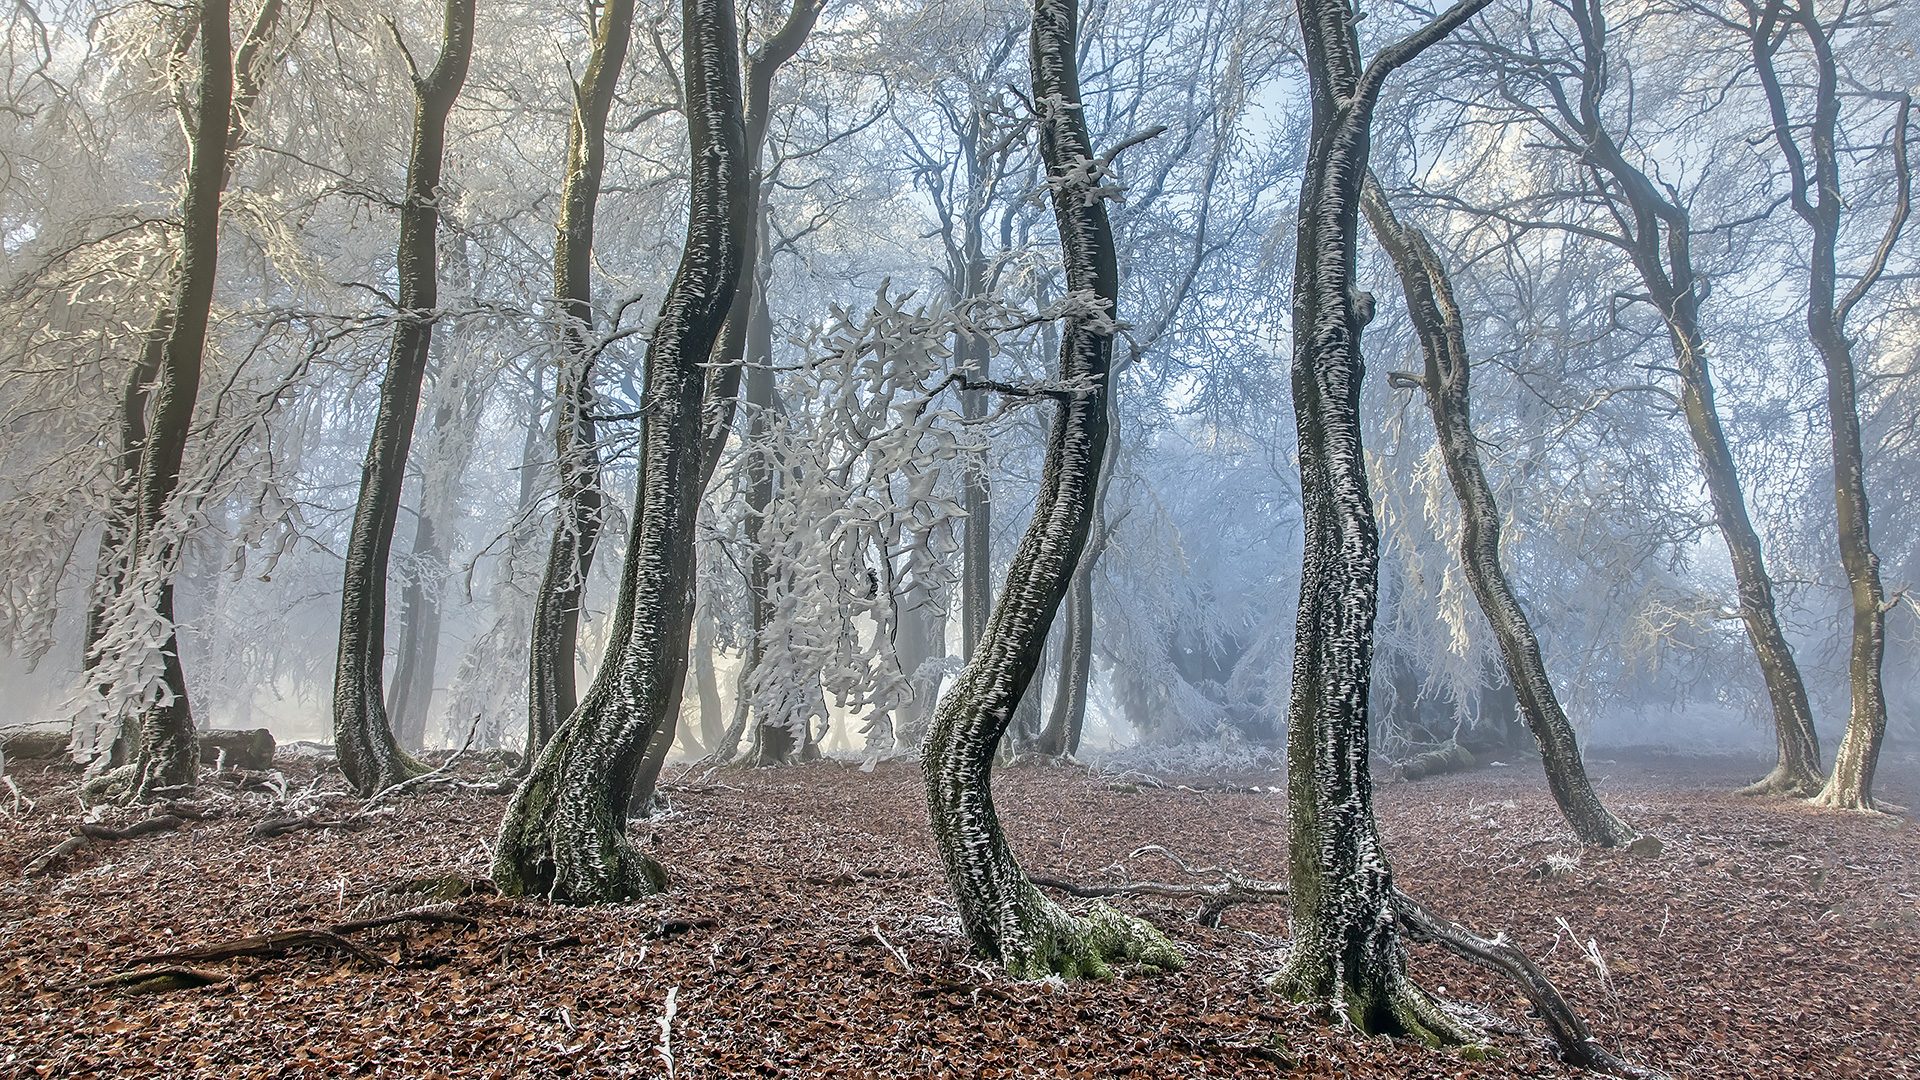 Väterchen Frost schafft einen einmaligen Märchenwald auf dem Großen Feldberg im Taunus.